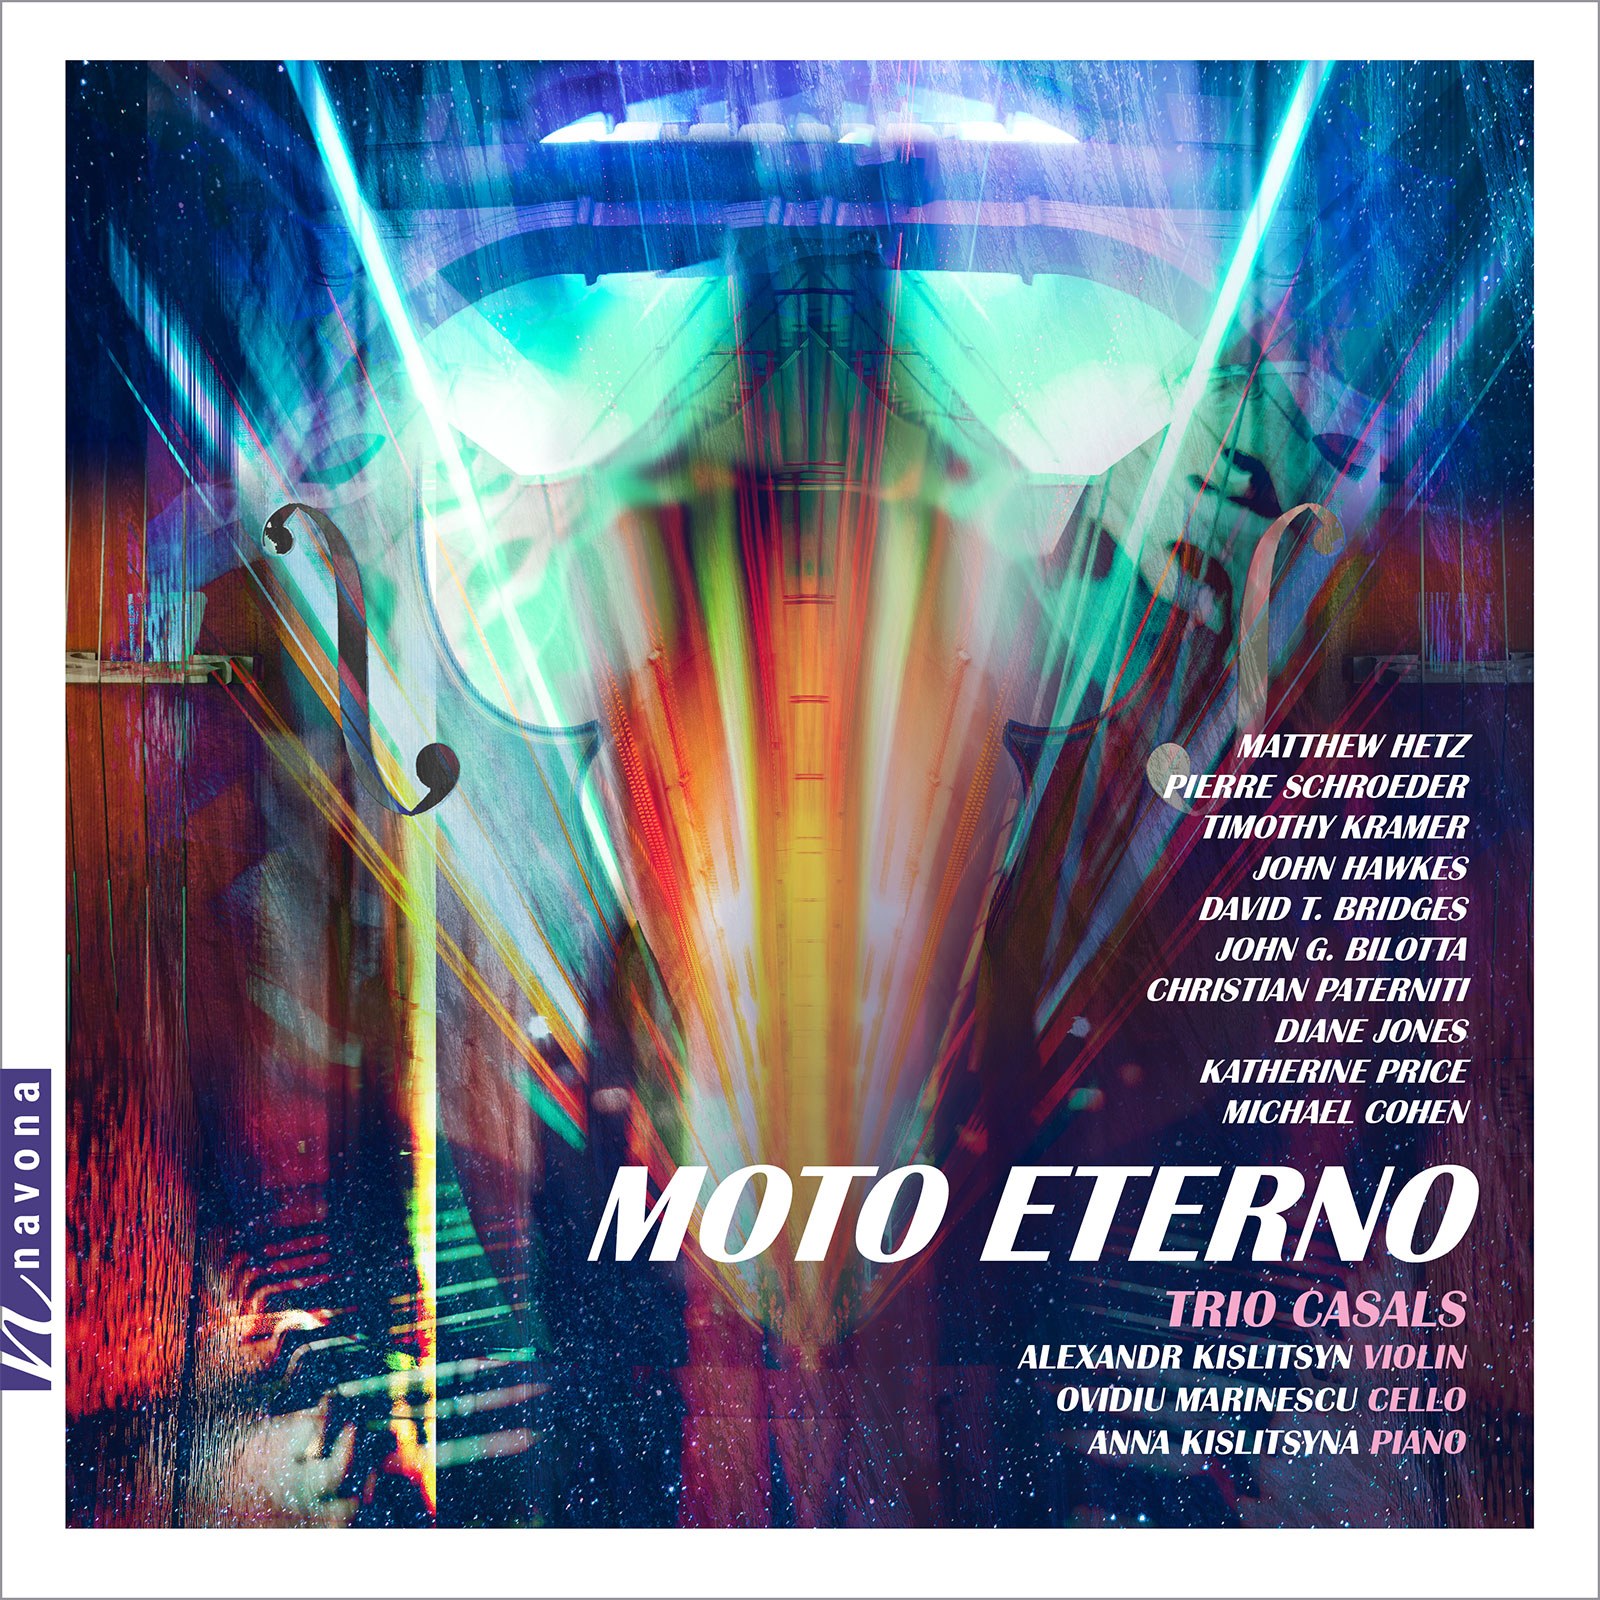 Moto Eterno - Trio Casals - Album Cover